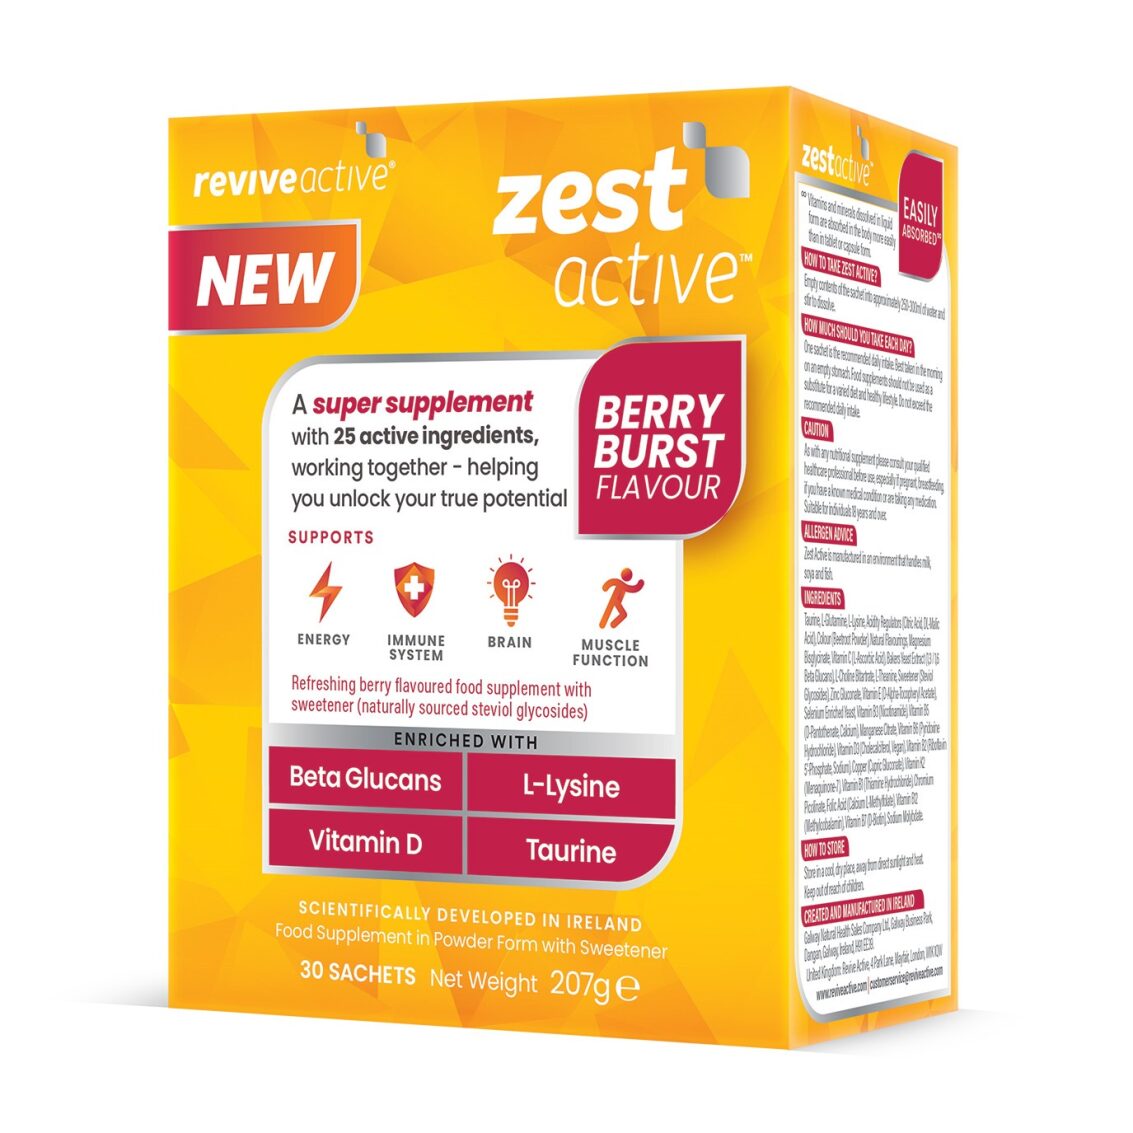 Revive Active Super Supplement Zest Active Berry Burst  Flavour 30 day pack